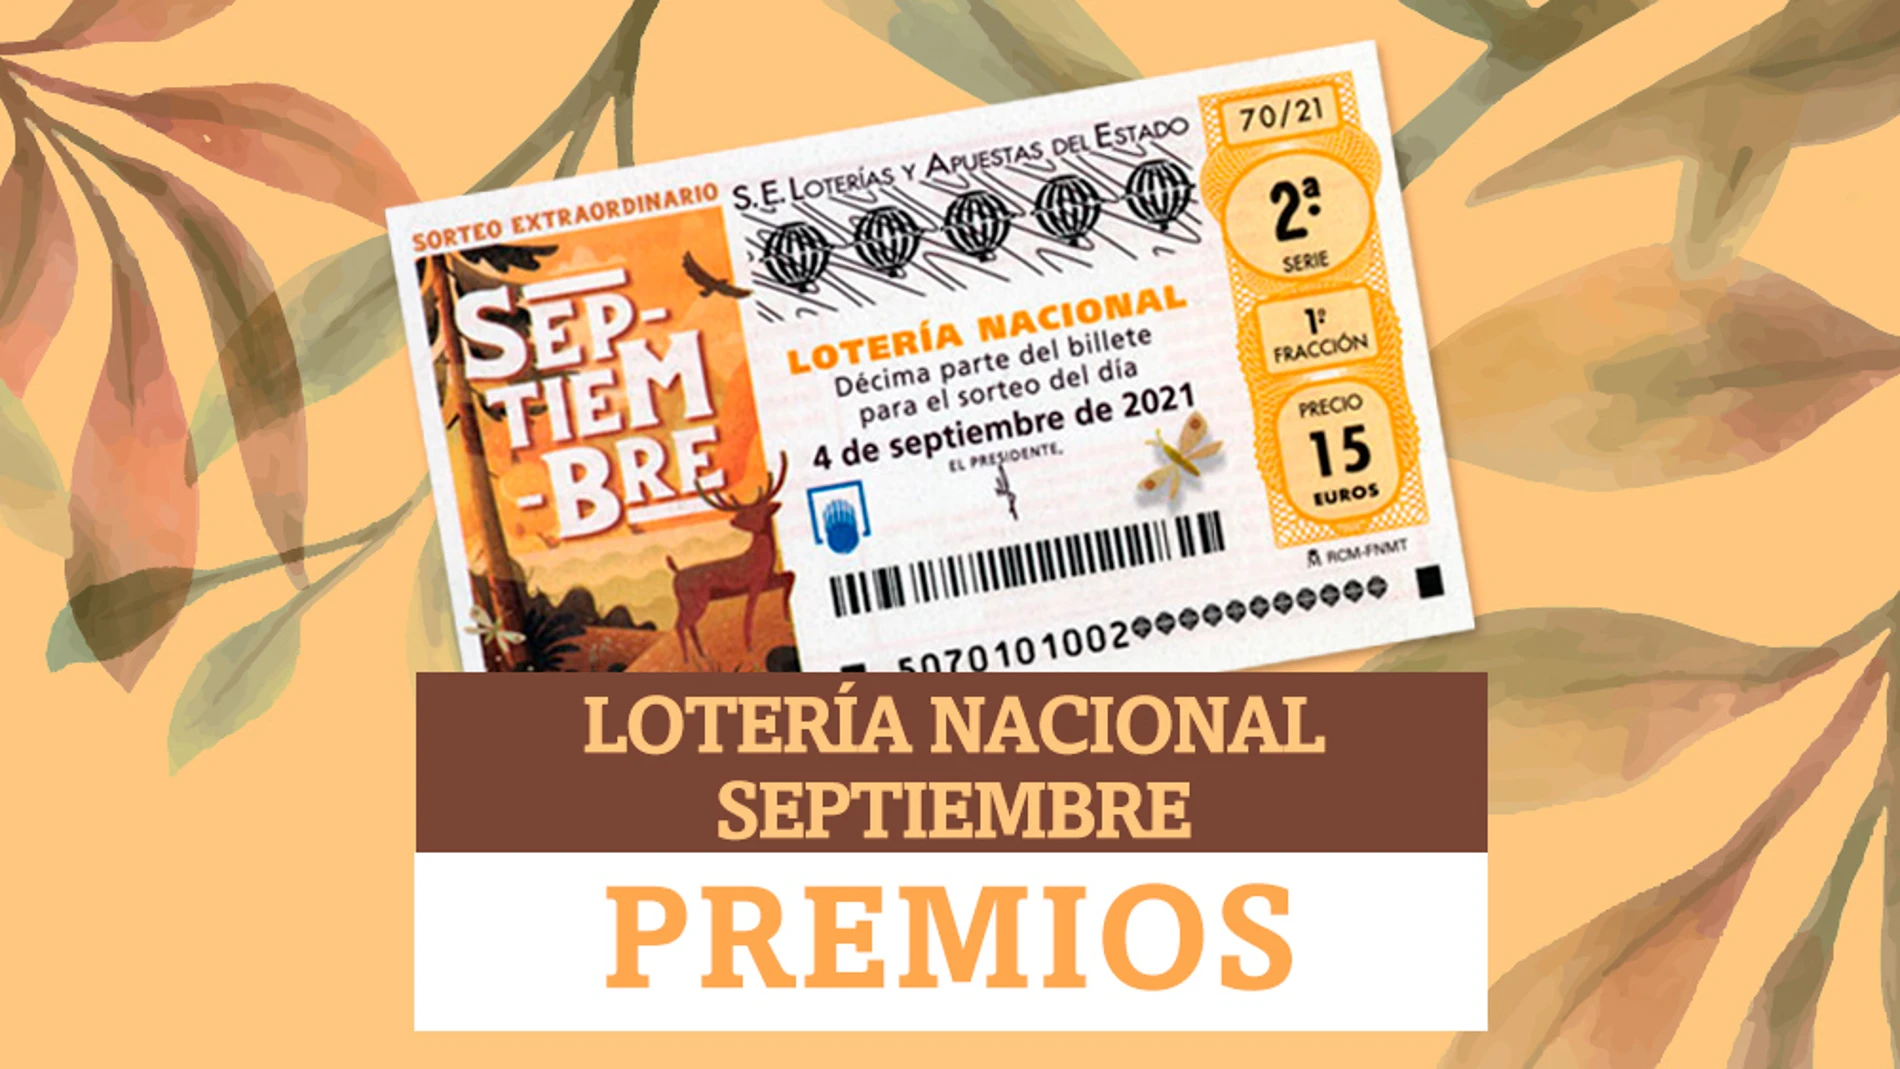 Premios de Lotería Nacional de Septiembre: ¿cuánto dinero puedo ganar?